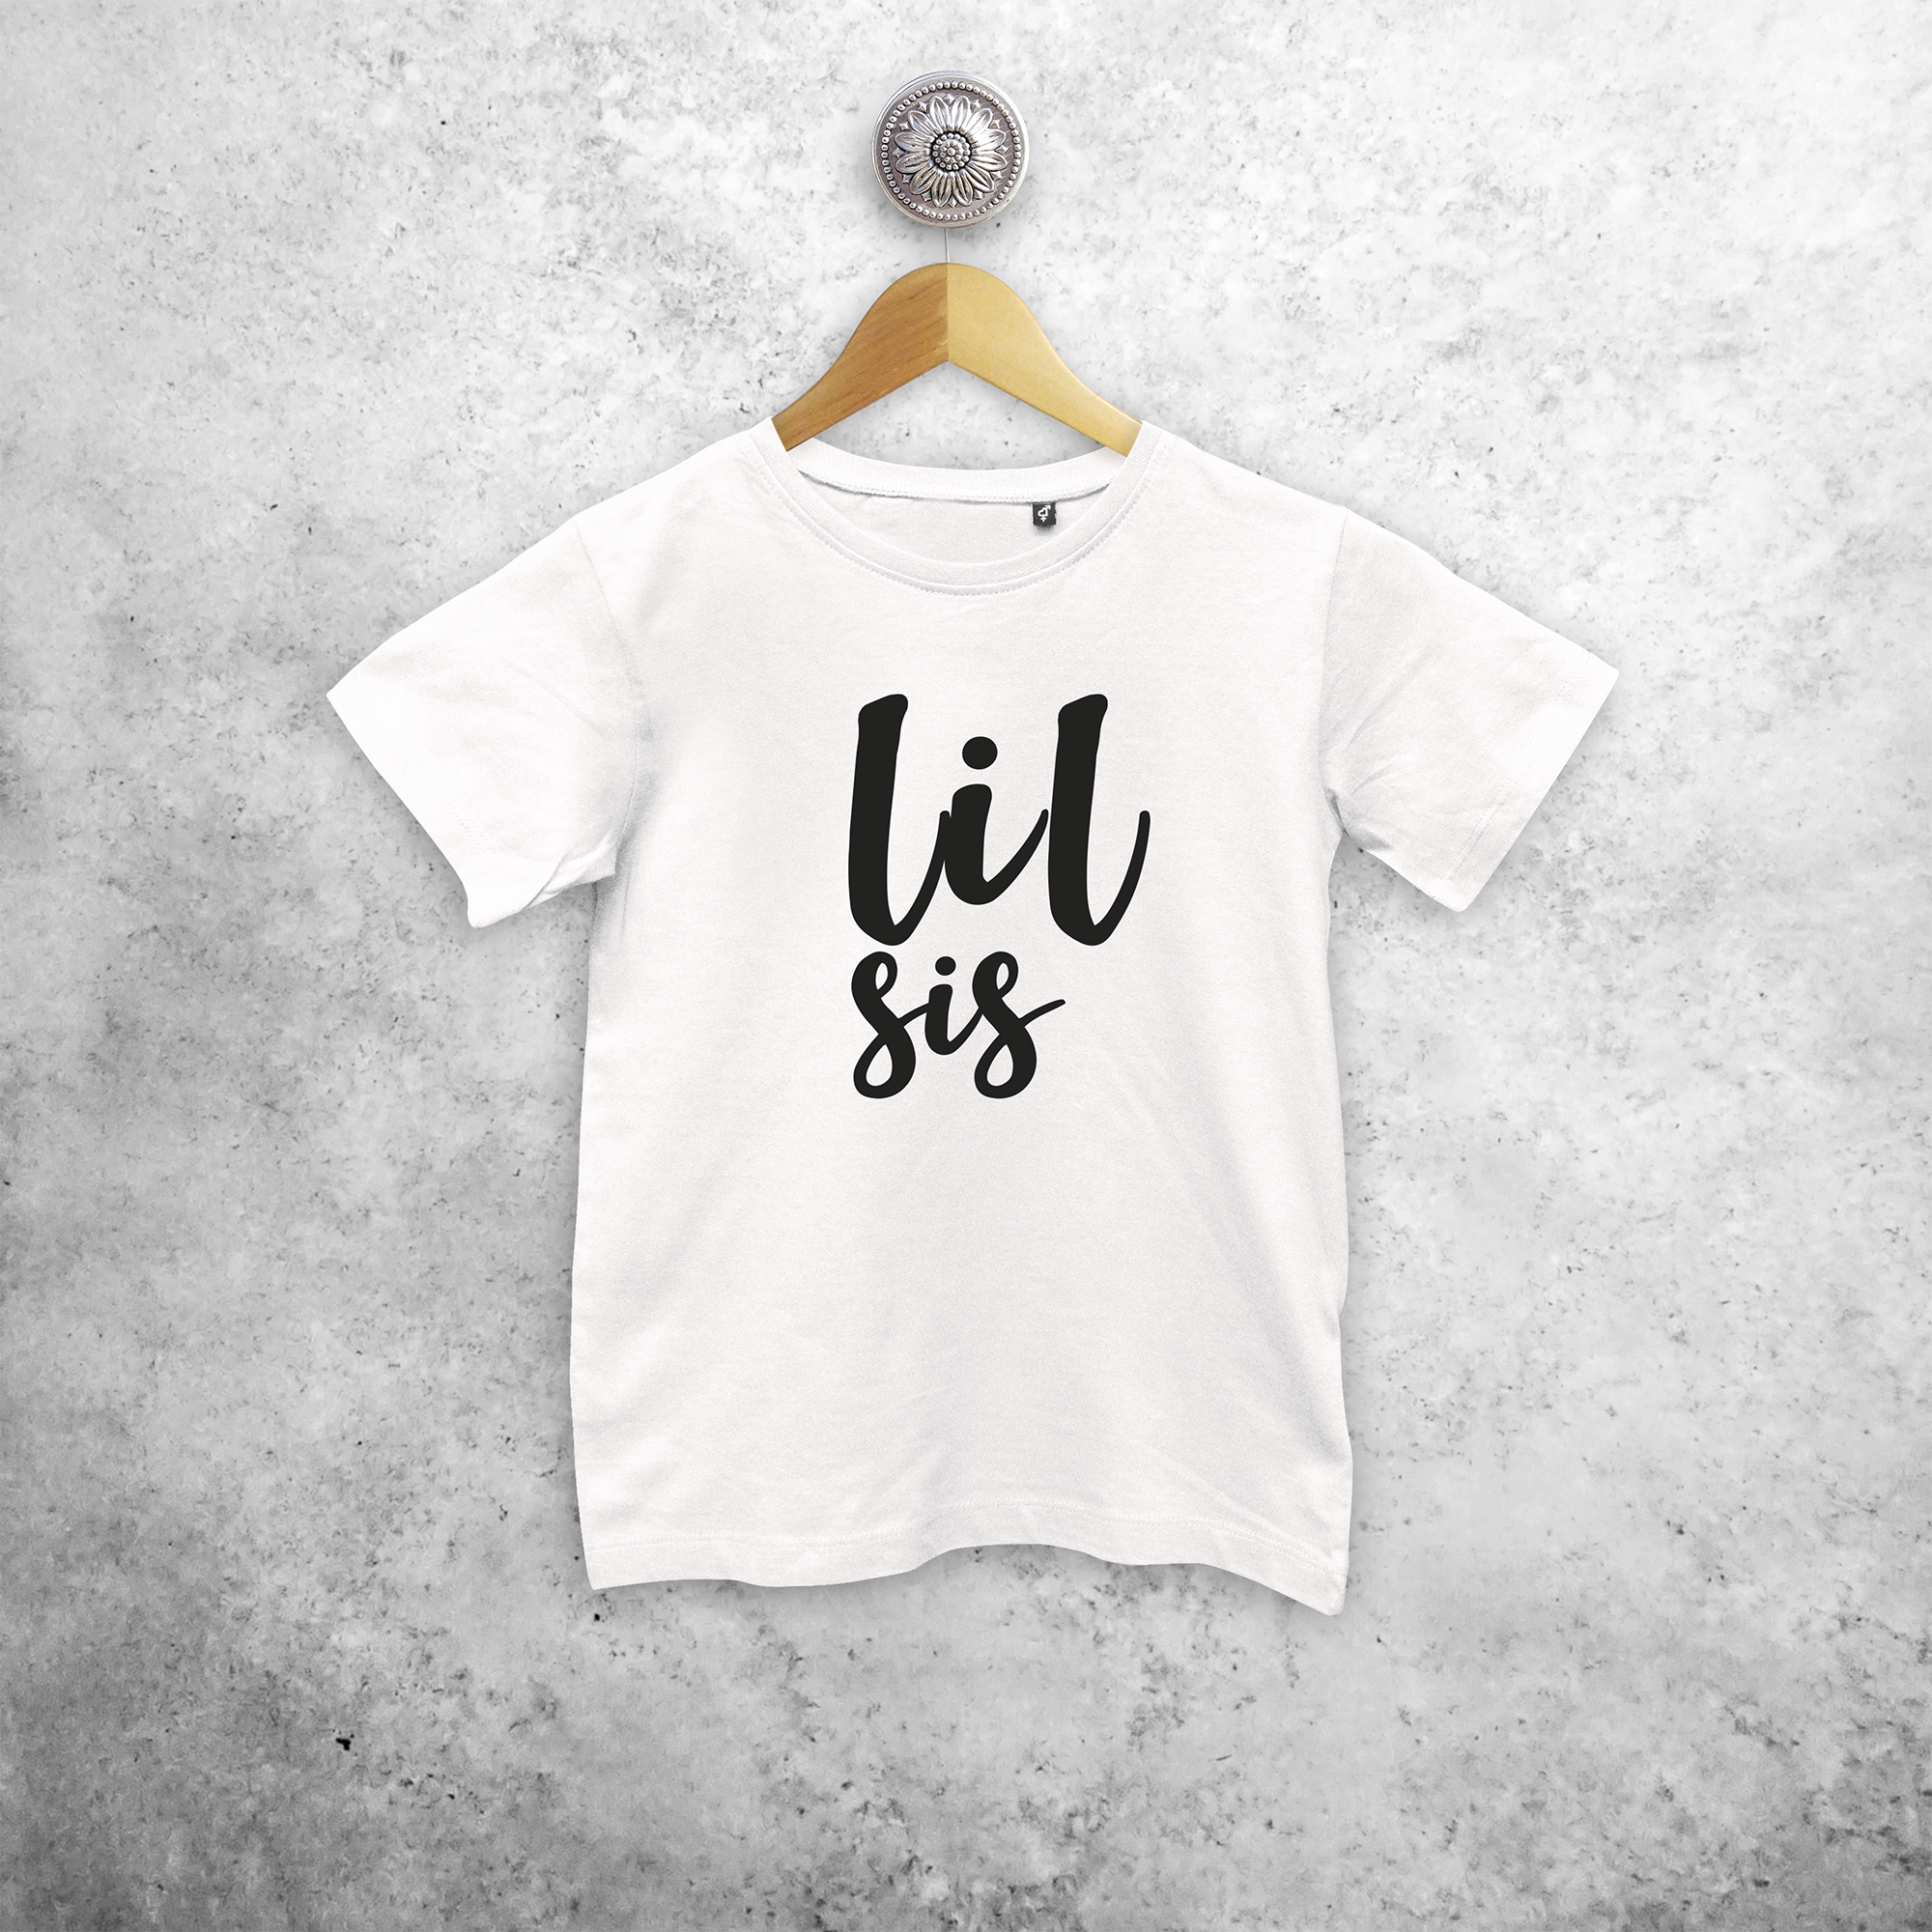 'Lil sis' kids shortsleeve shirt